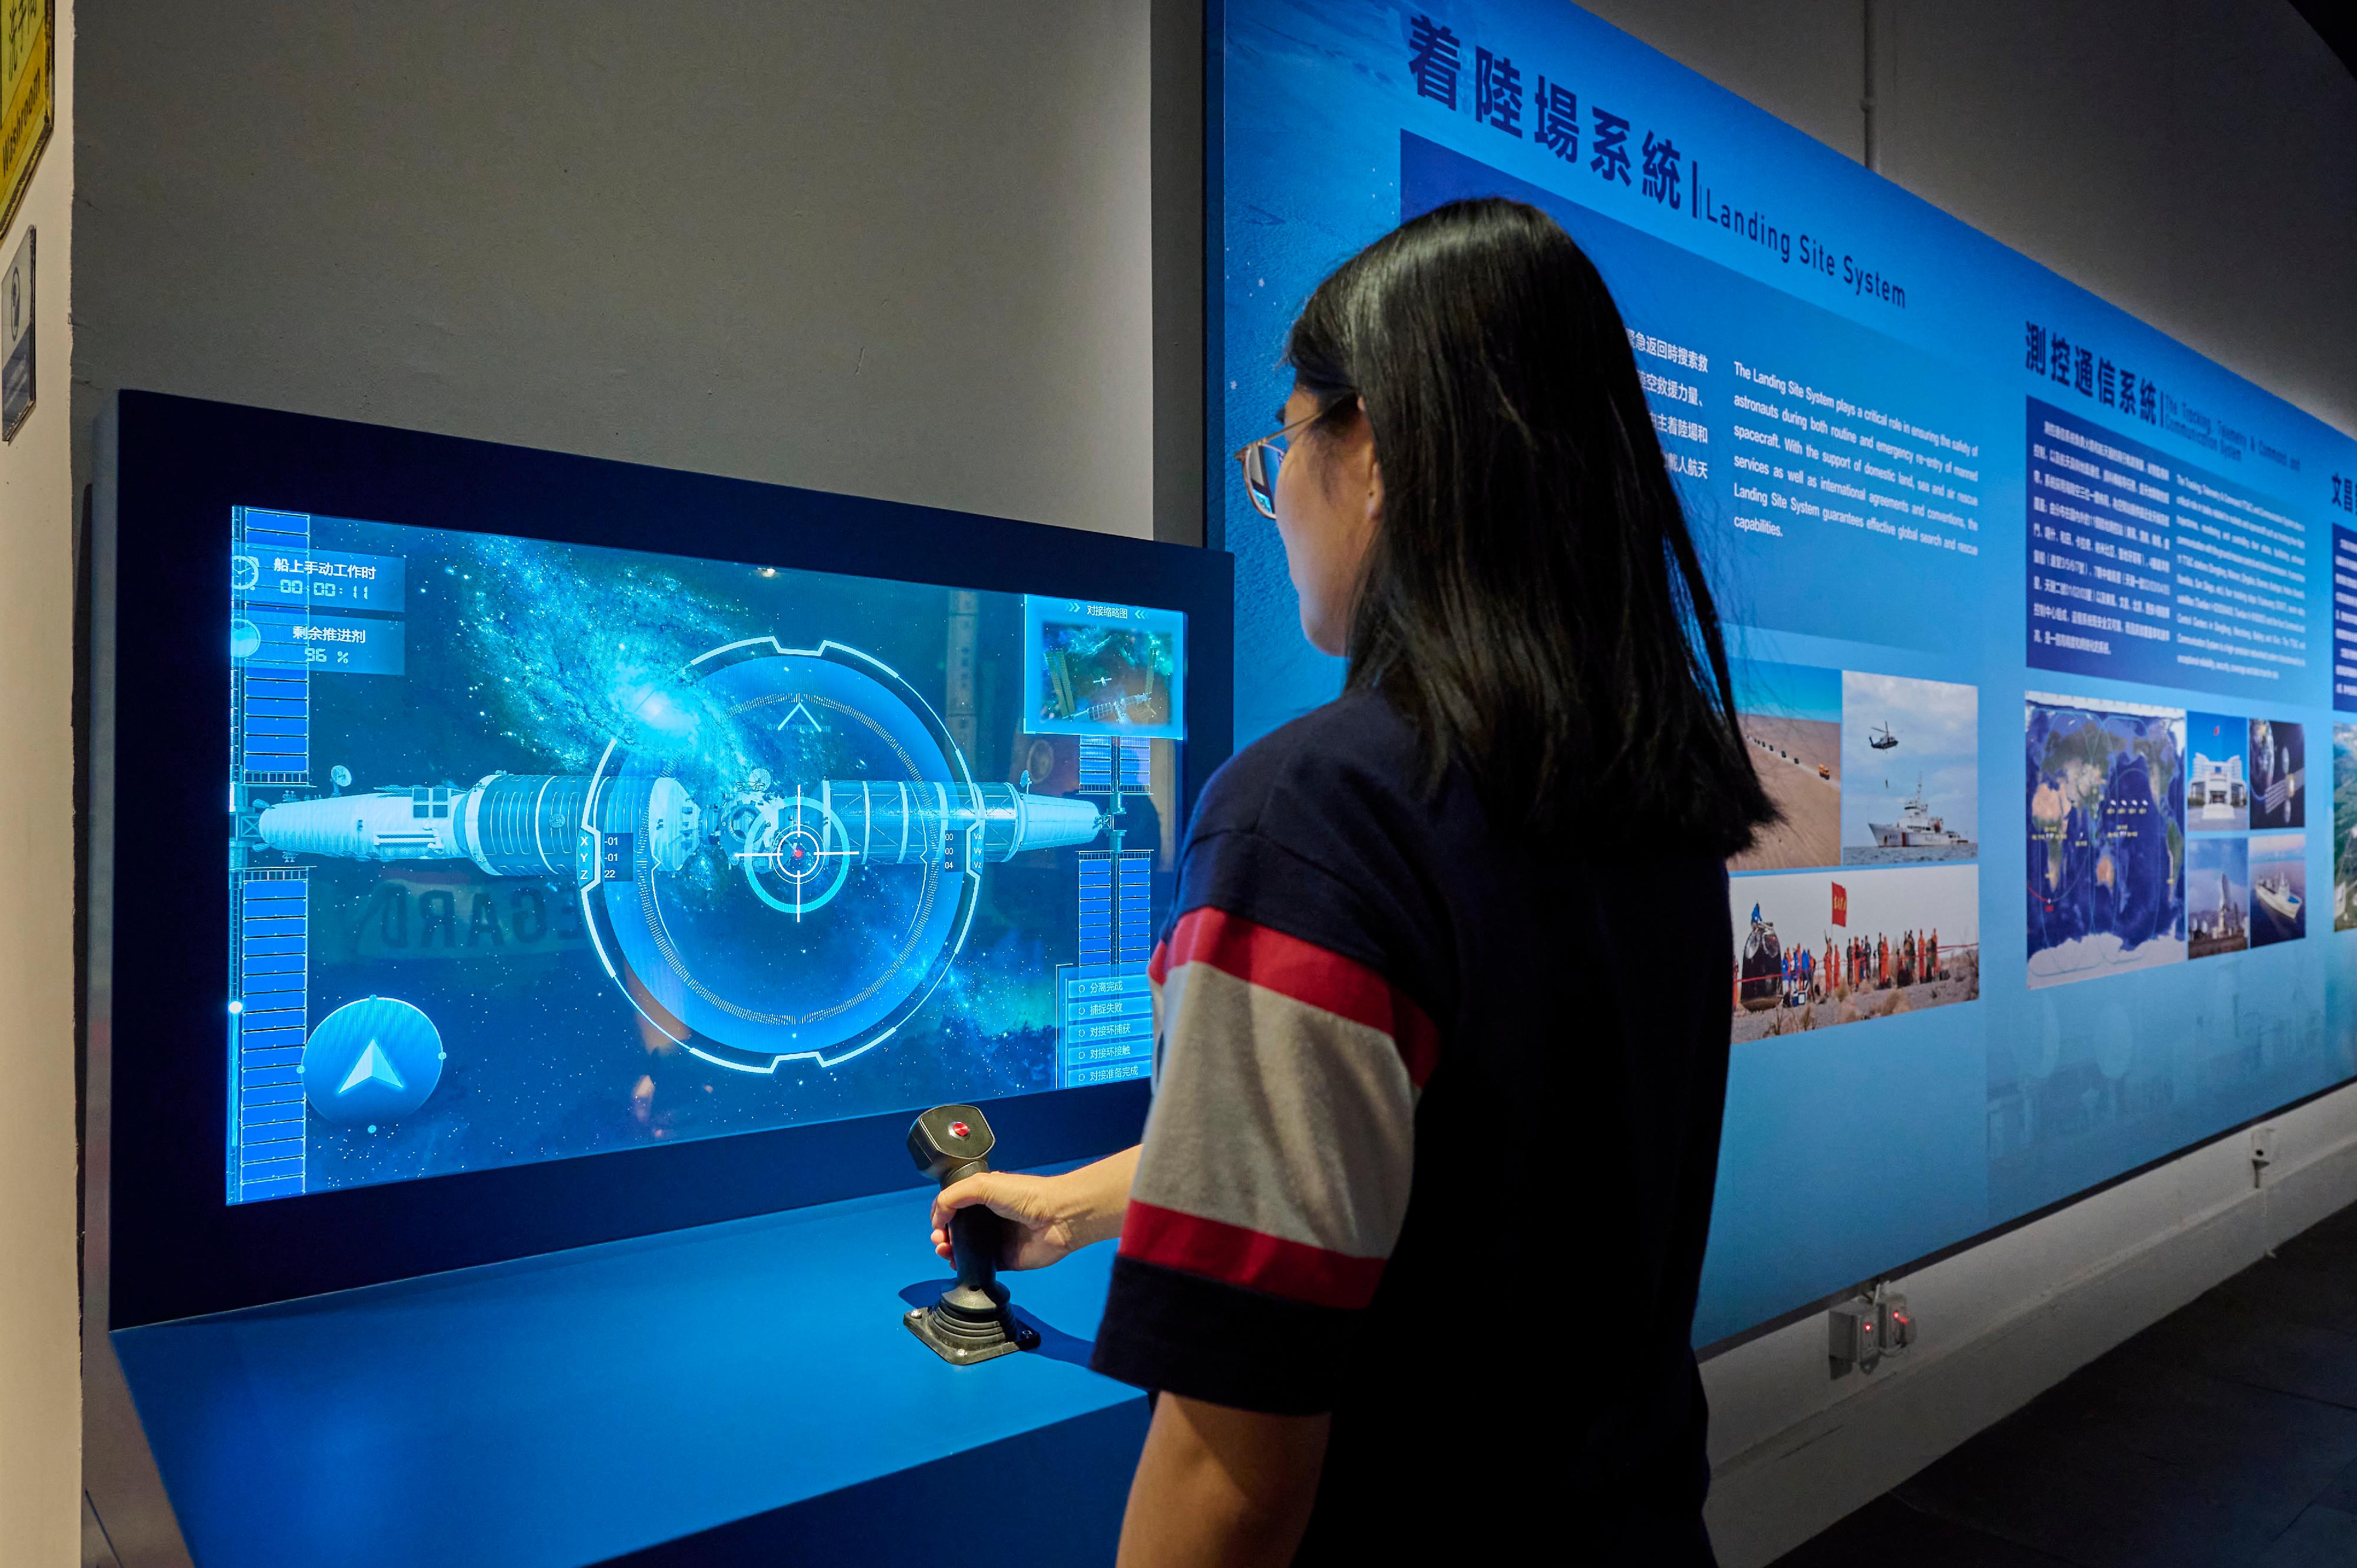 互動展品「空間站交會對接」，觀眾可模擬航天員控制神舟載人飛船與空間站進行交會對接。